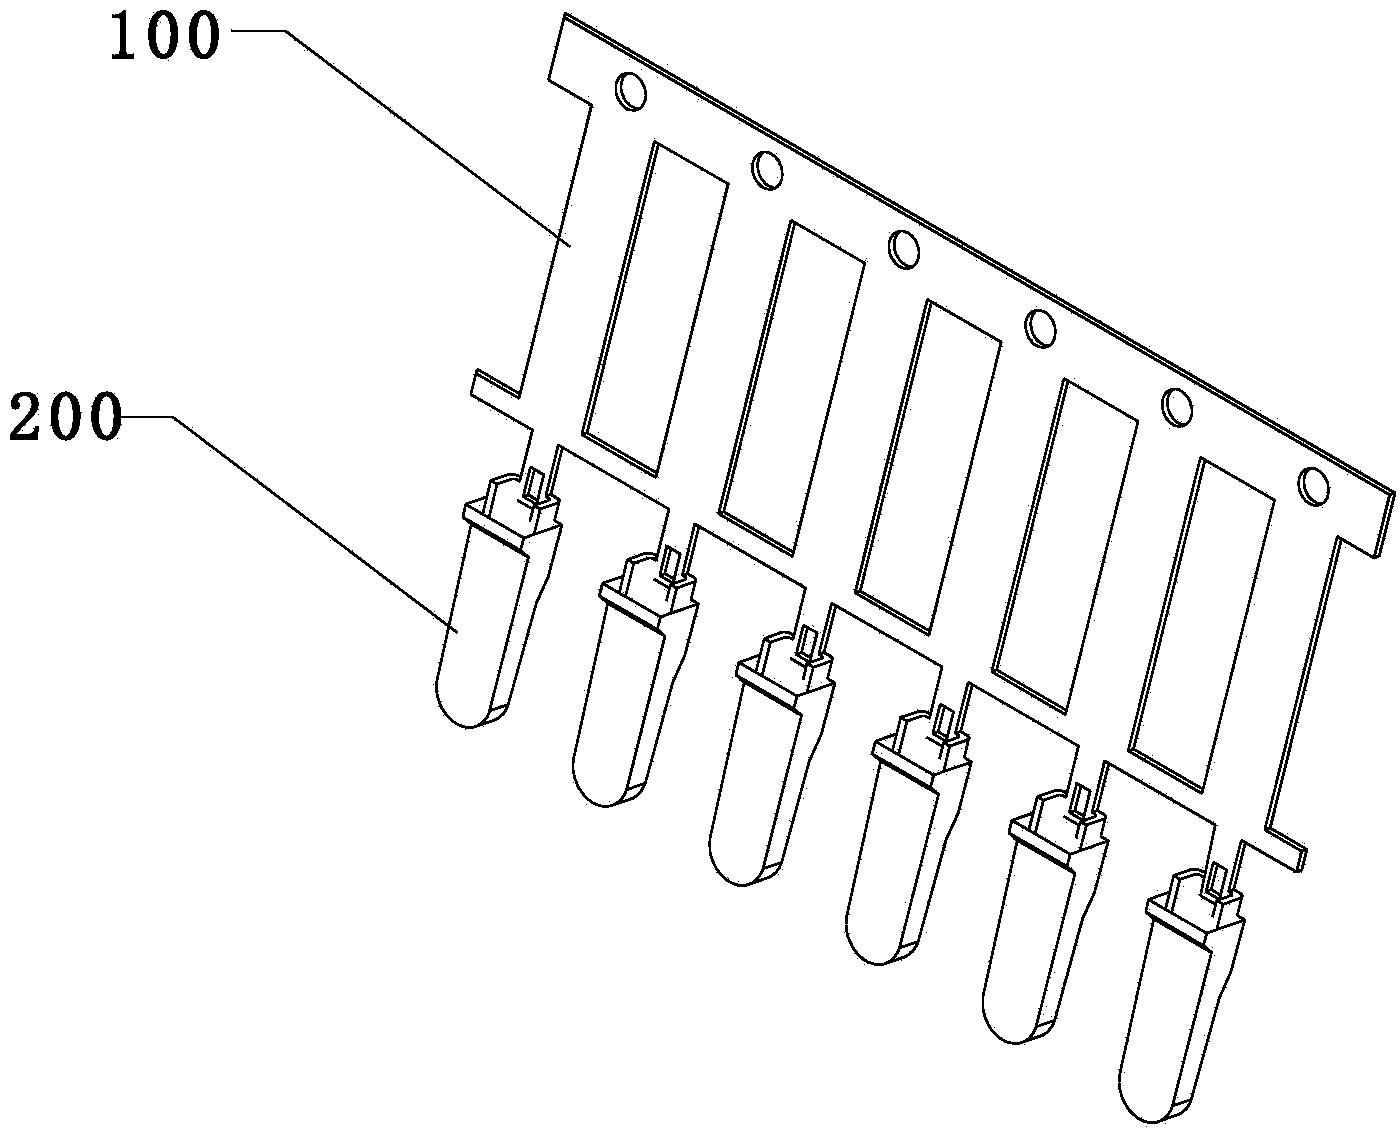 RJ45 connector light guiding column